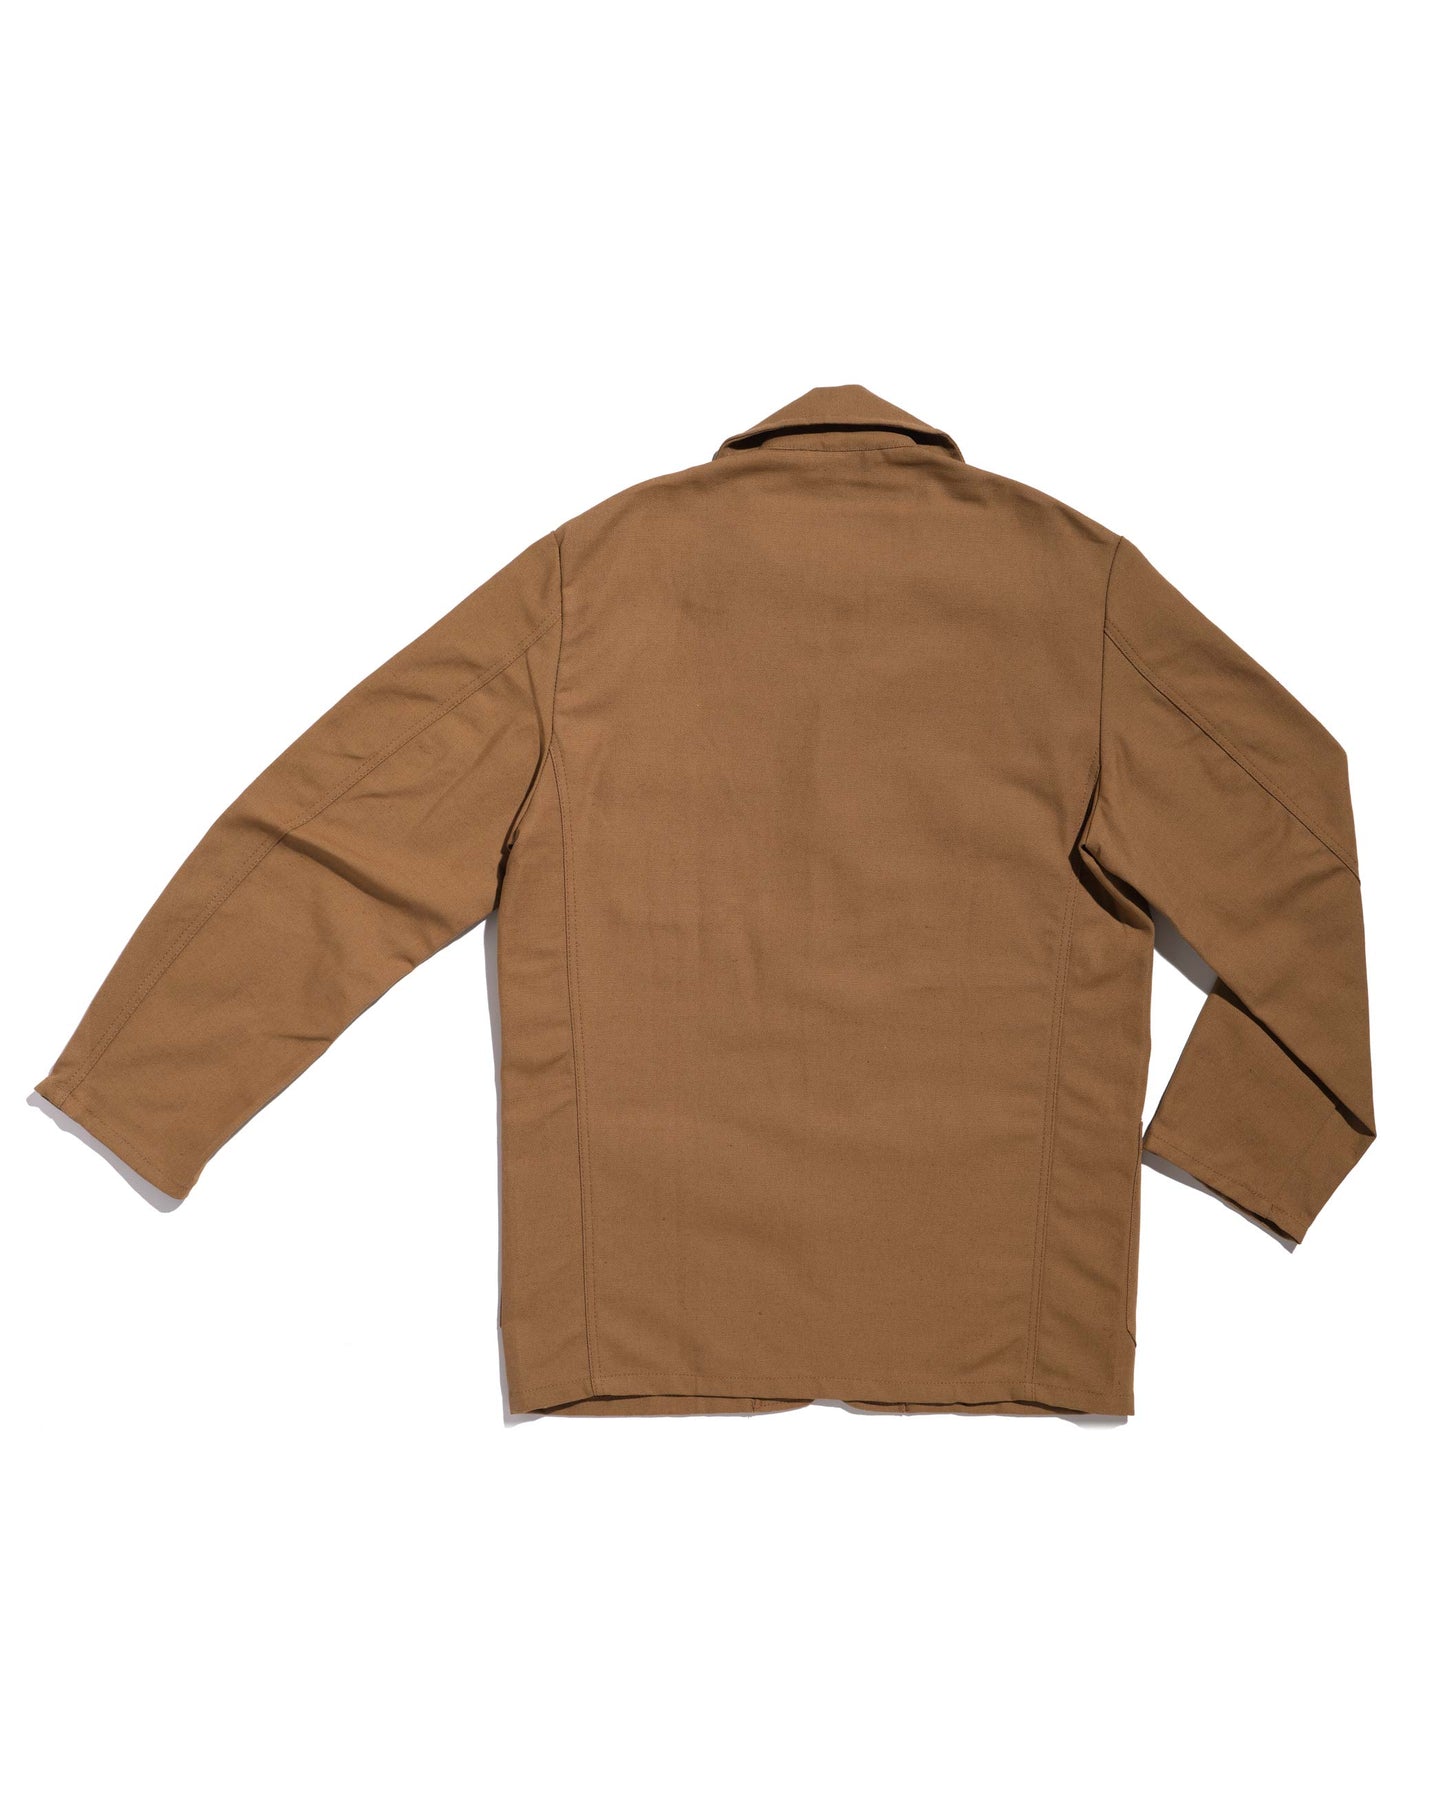 Le Laboureur sports jacket linen/cotton beige